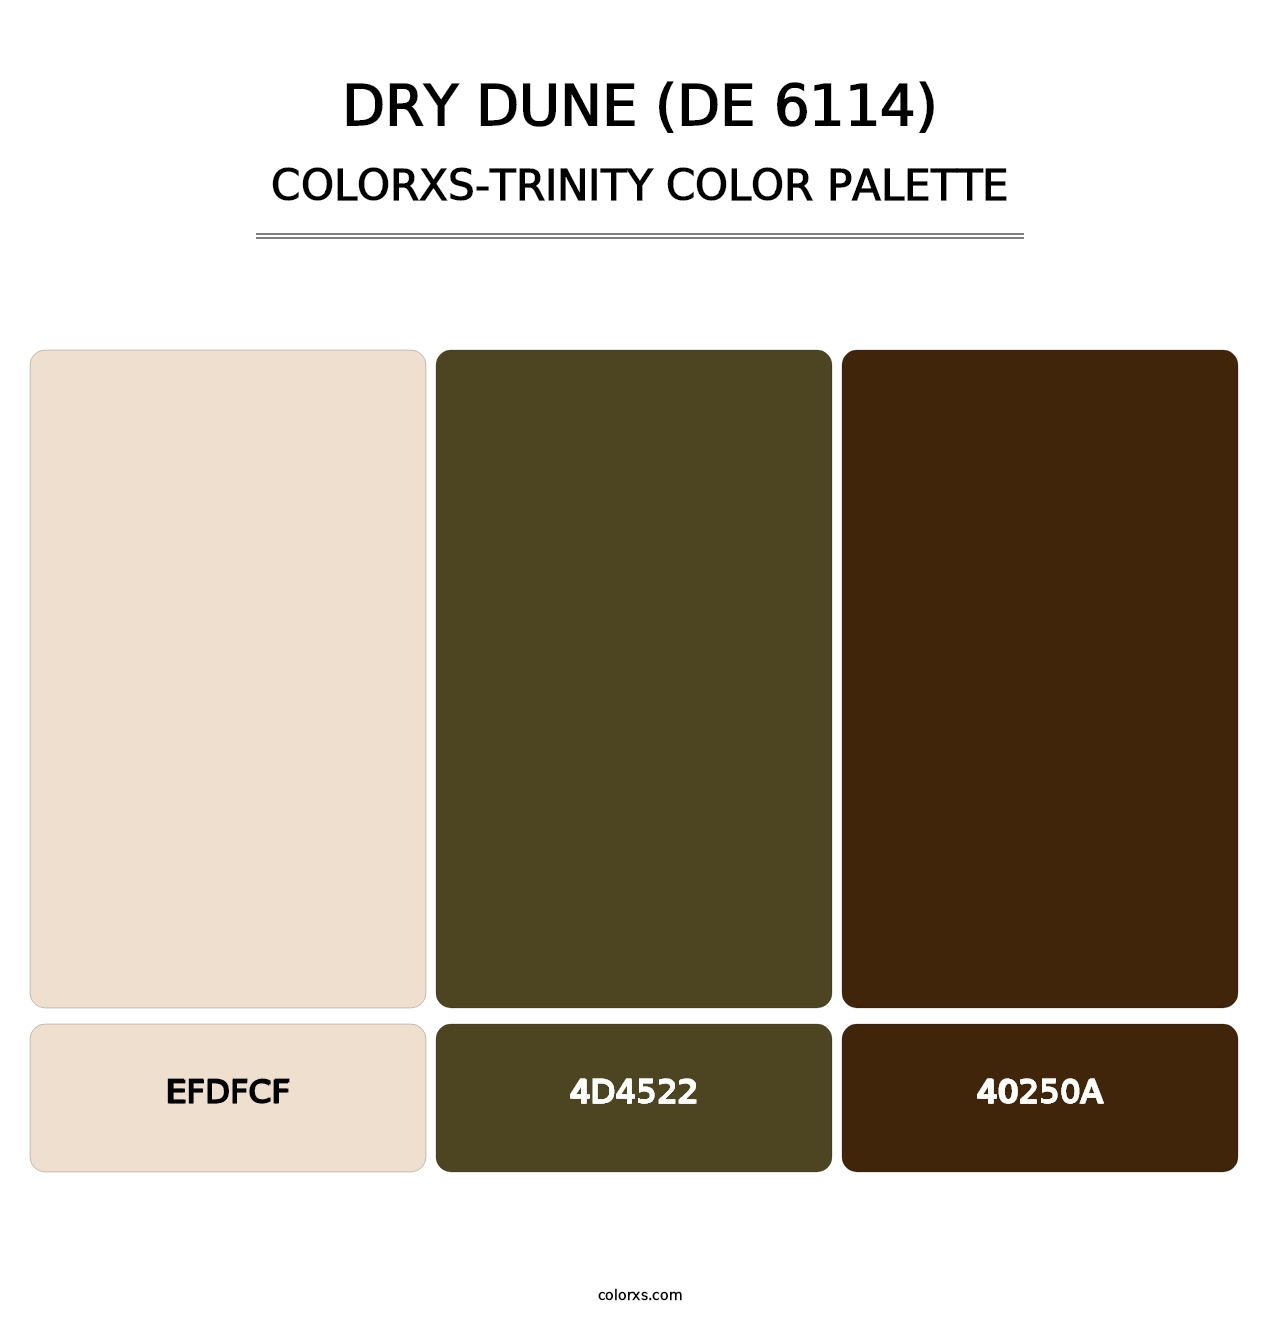 Dry Dune (DE 6114) - Colorxs Trinity Palette